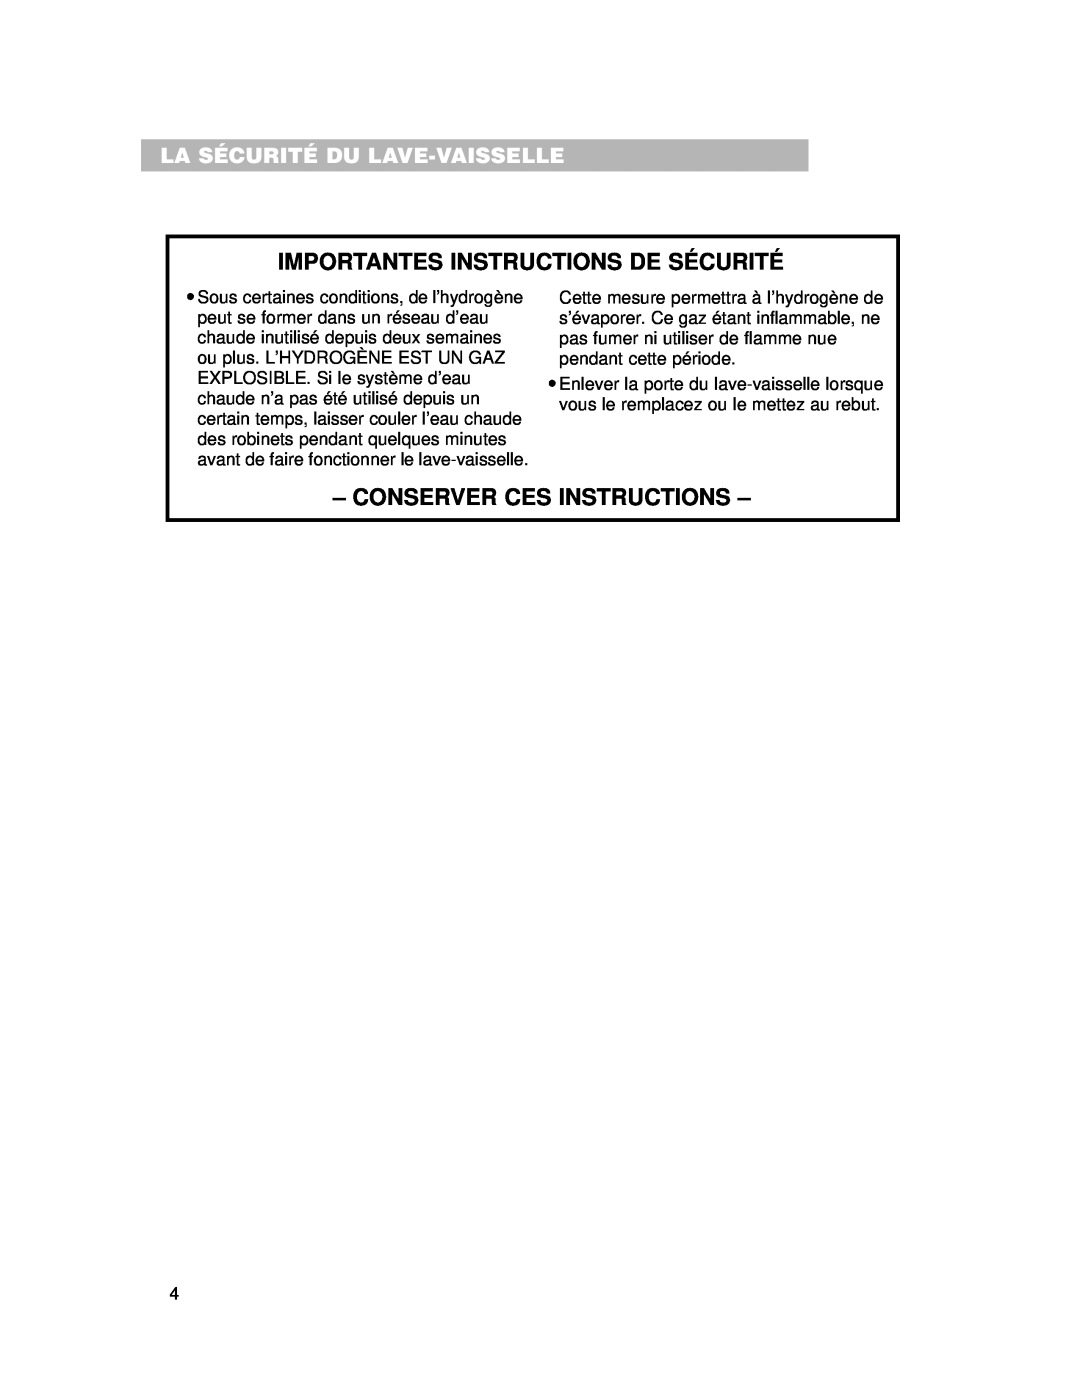 Whirlpool 910 Series La Sécurité Du Lave-Vaisselle, Importantes Instructions De Sécurité, Conserver Ces Instructions 